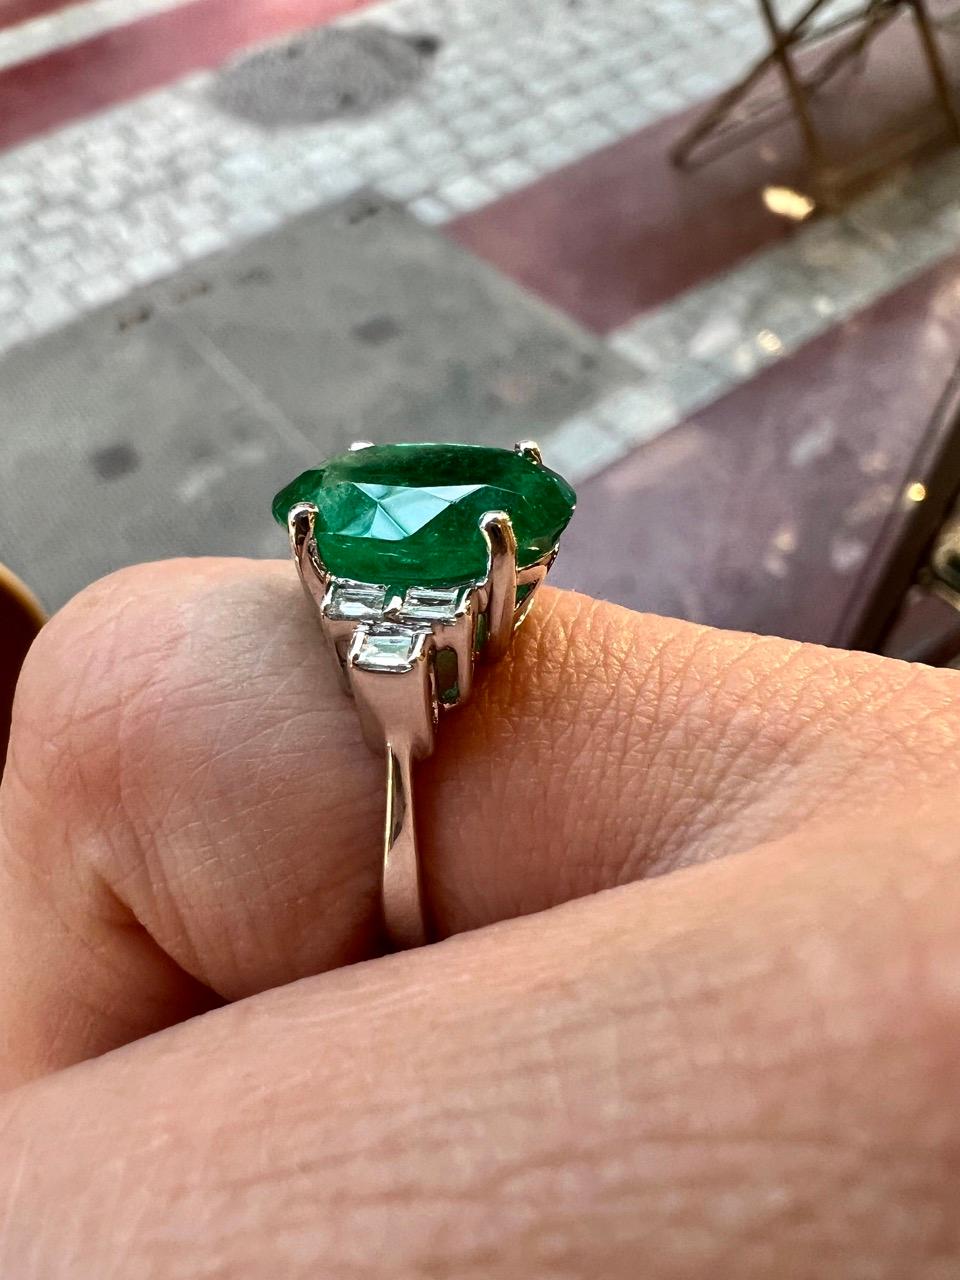 Emerald Cut Colombia Emerald of 4.73 Carat, Baguette-Cut Diamonds for 0.12 Carat Wedding